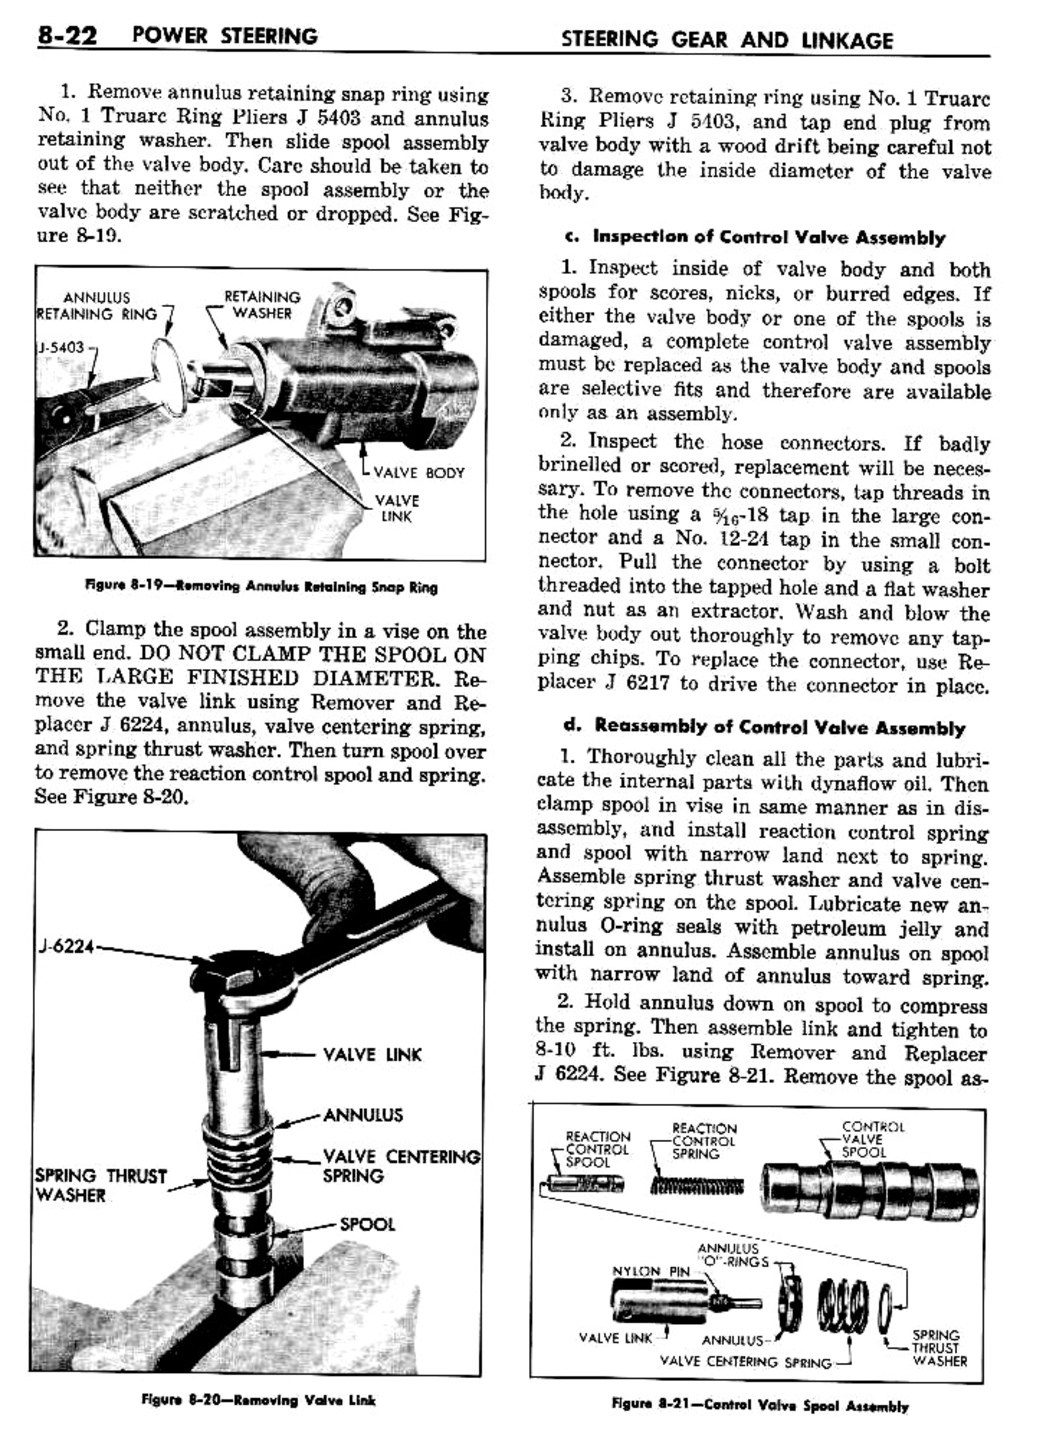 n_09 1957 Buick Shop Manual - Steering-022-022.jpg